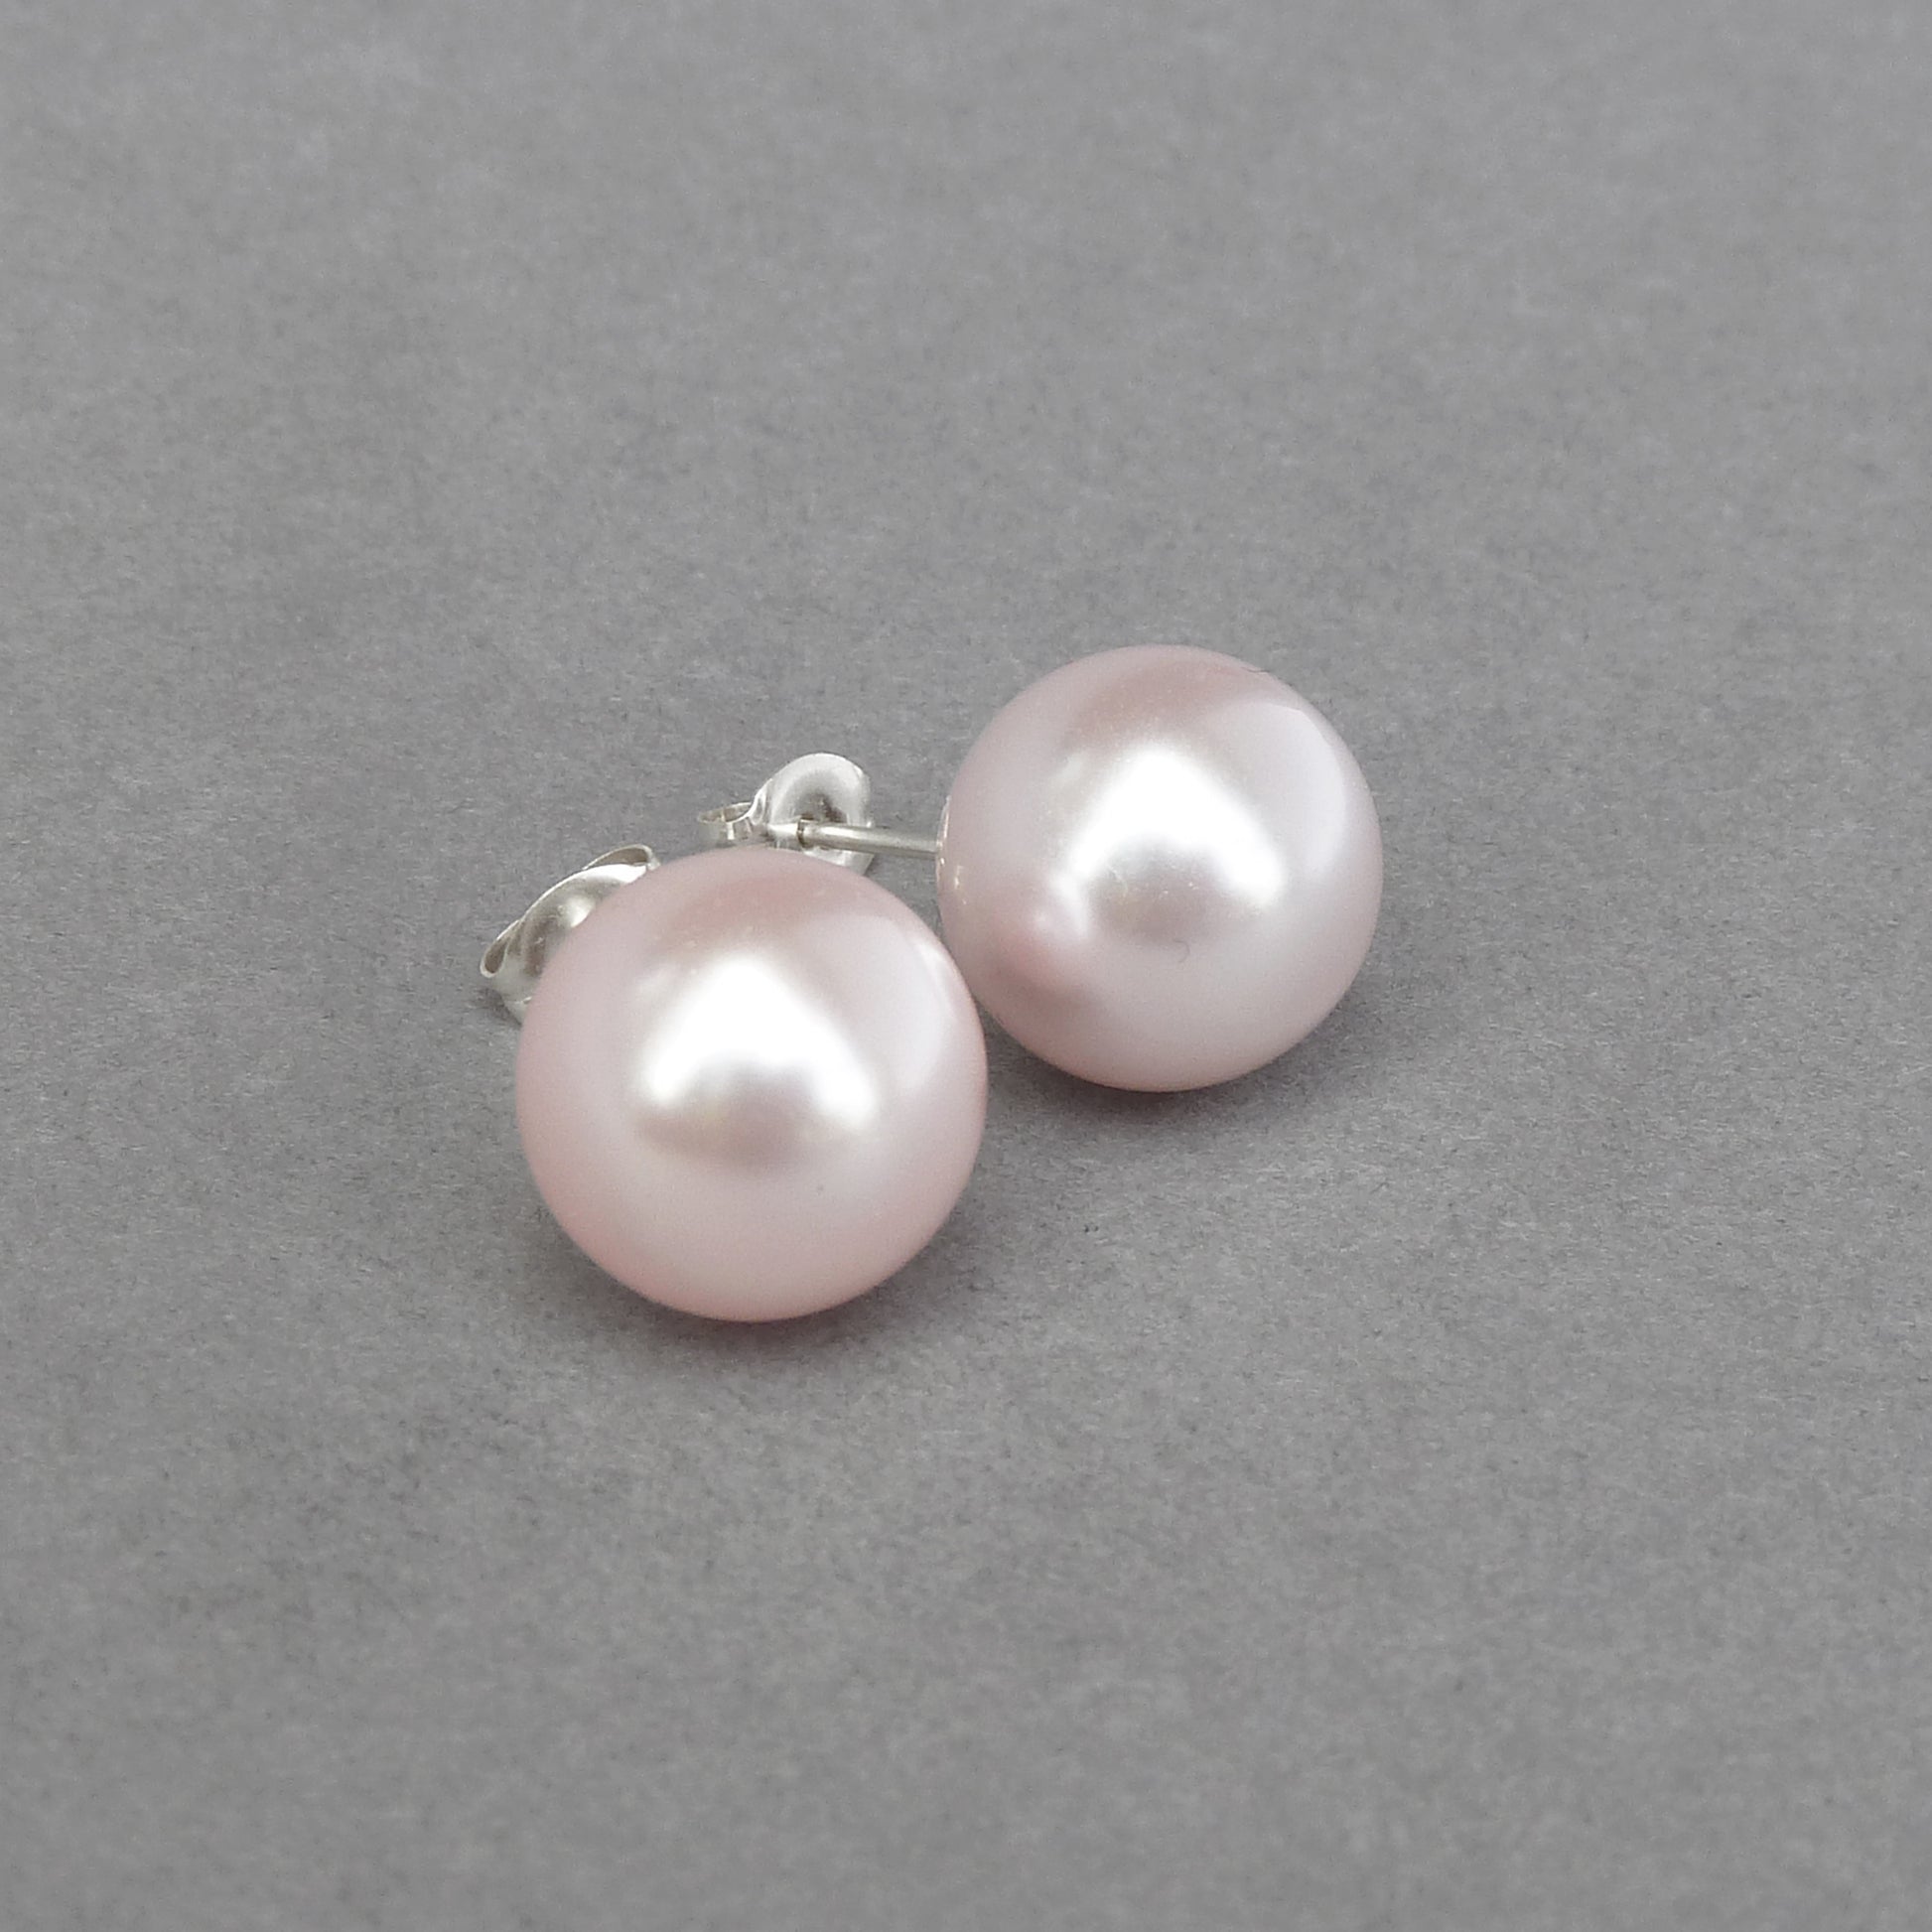 Large pale pink stud earrings